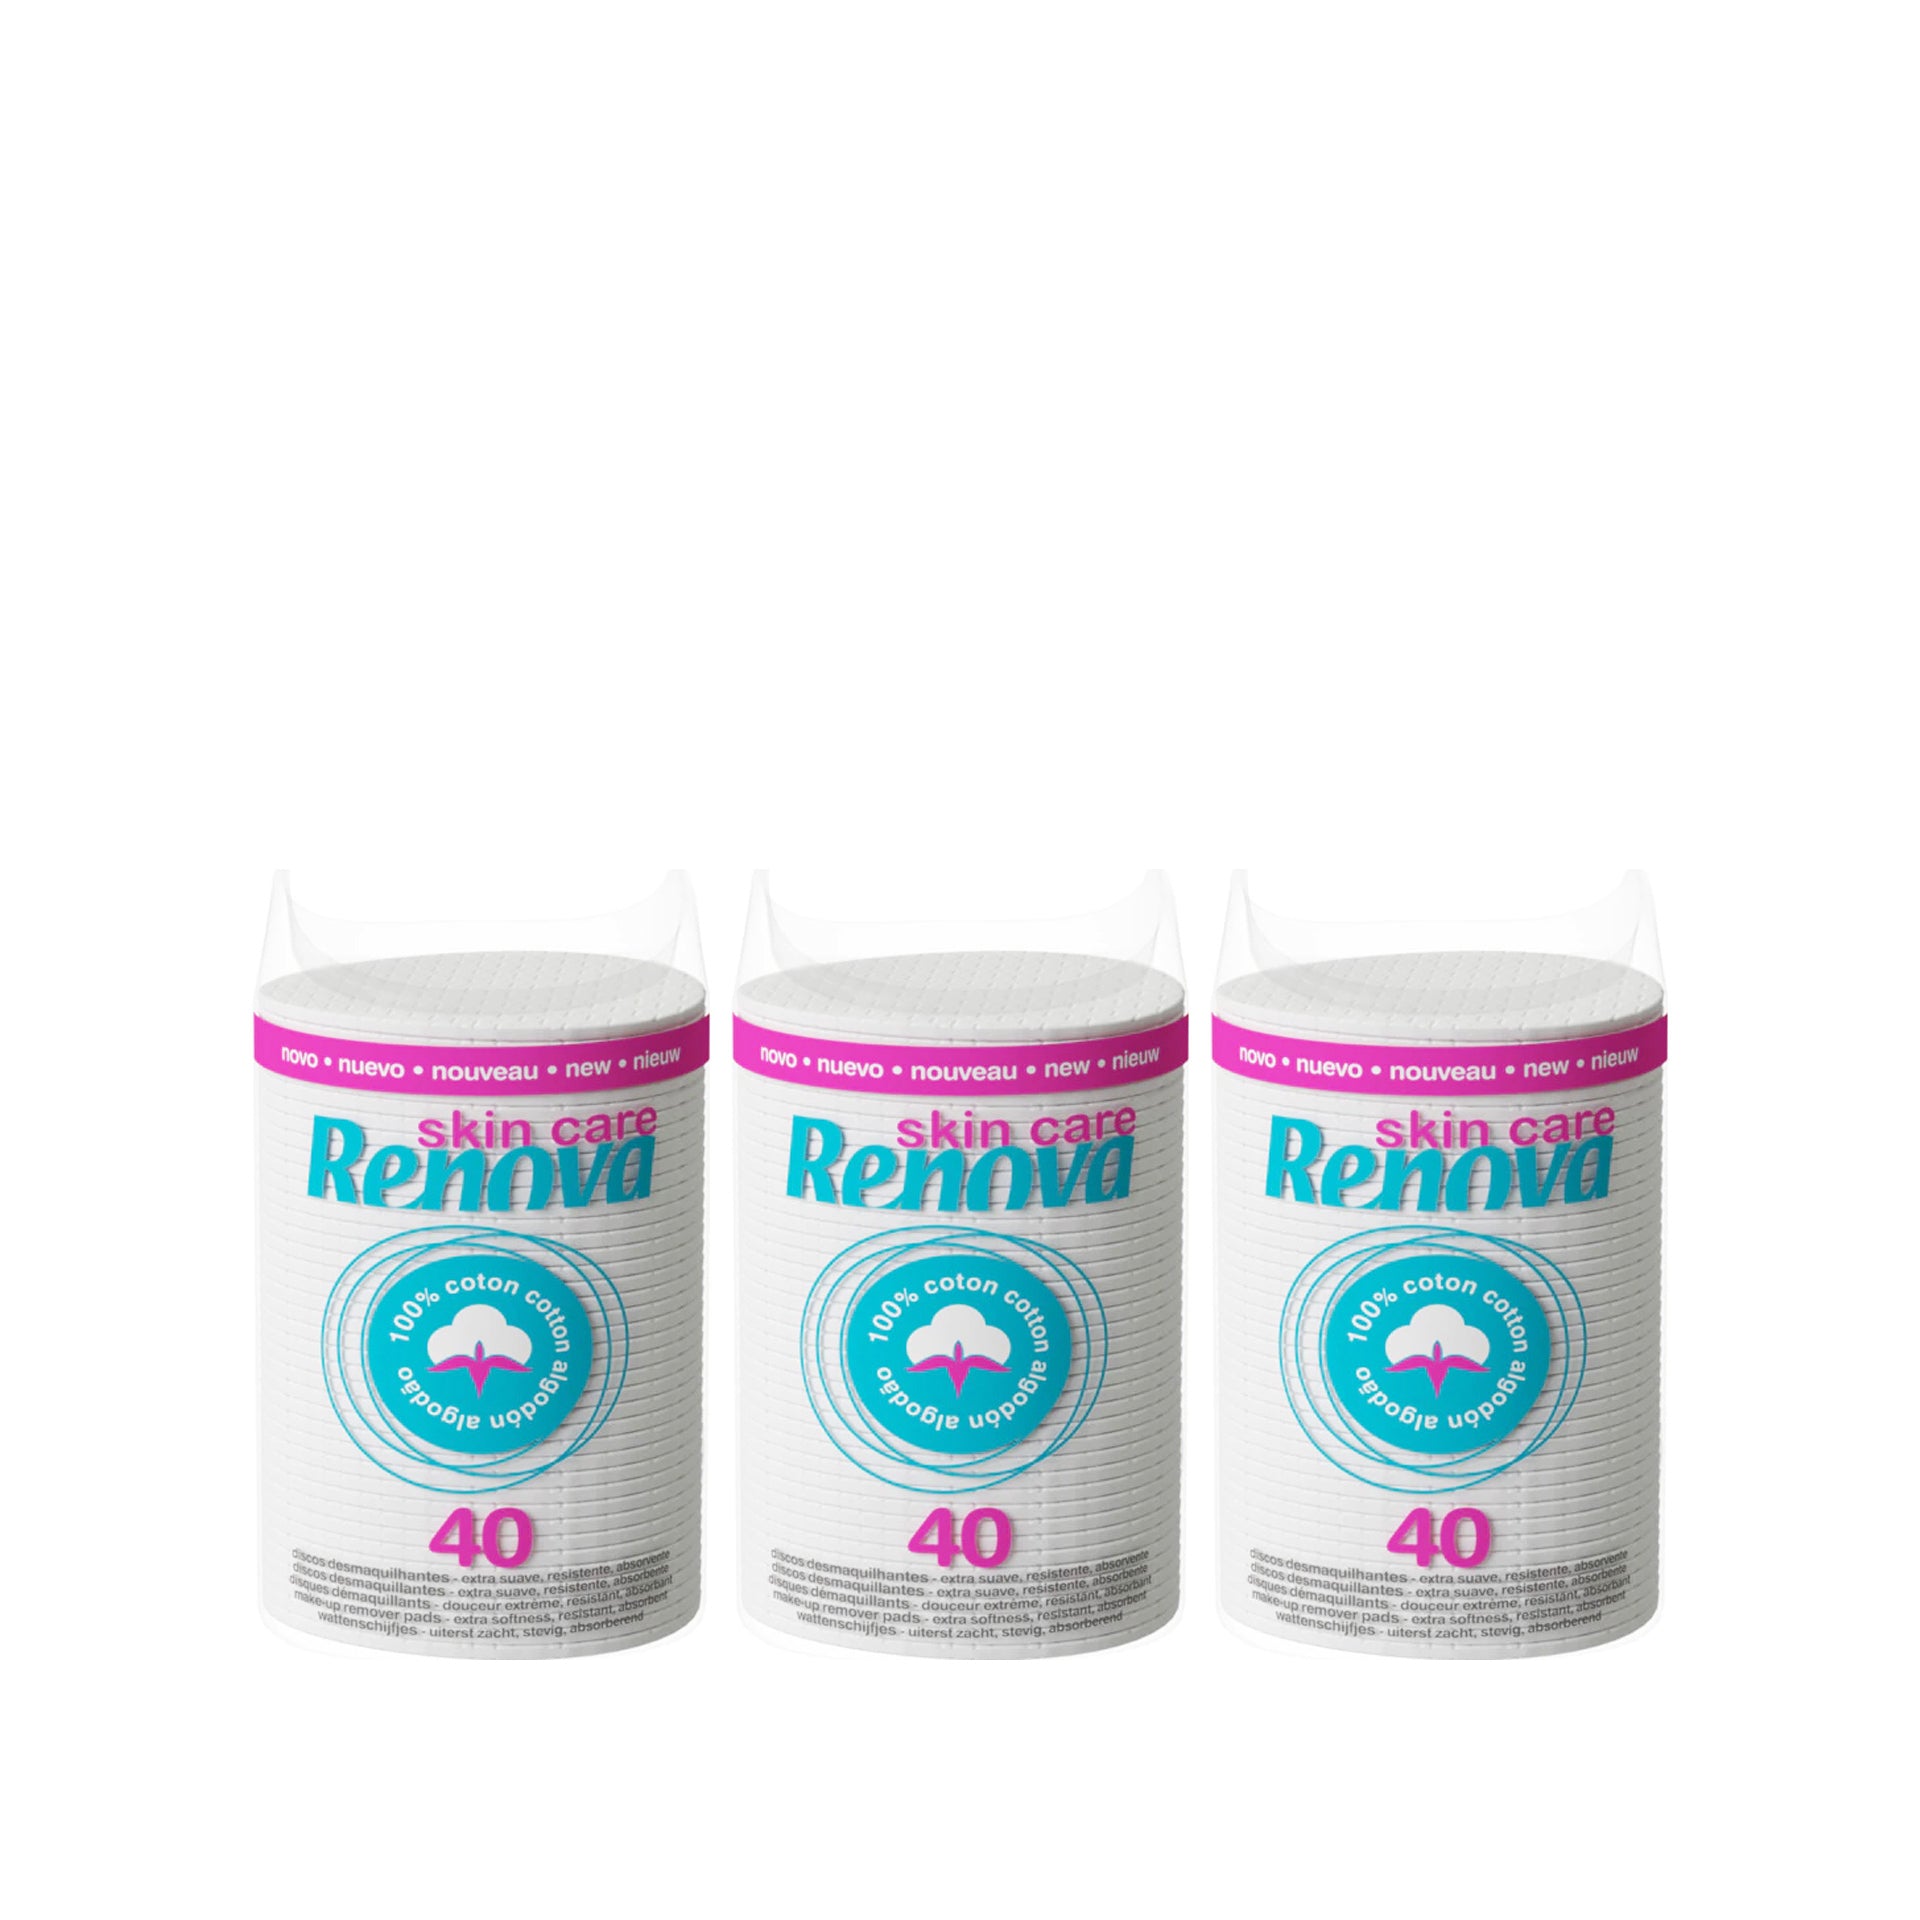 Renova Skin Care Discos Desmaquilhantes Maxi 40 un - Pack 3 x 40 un